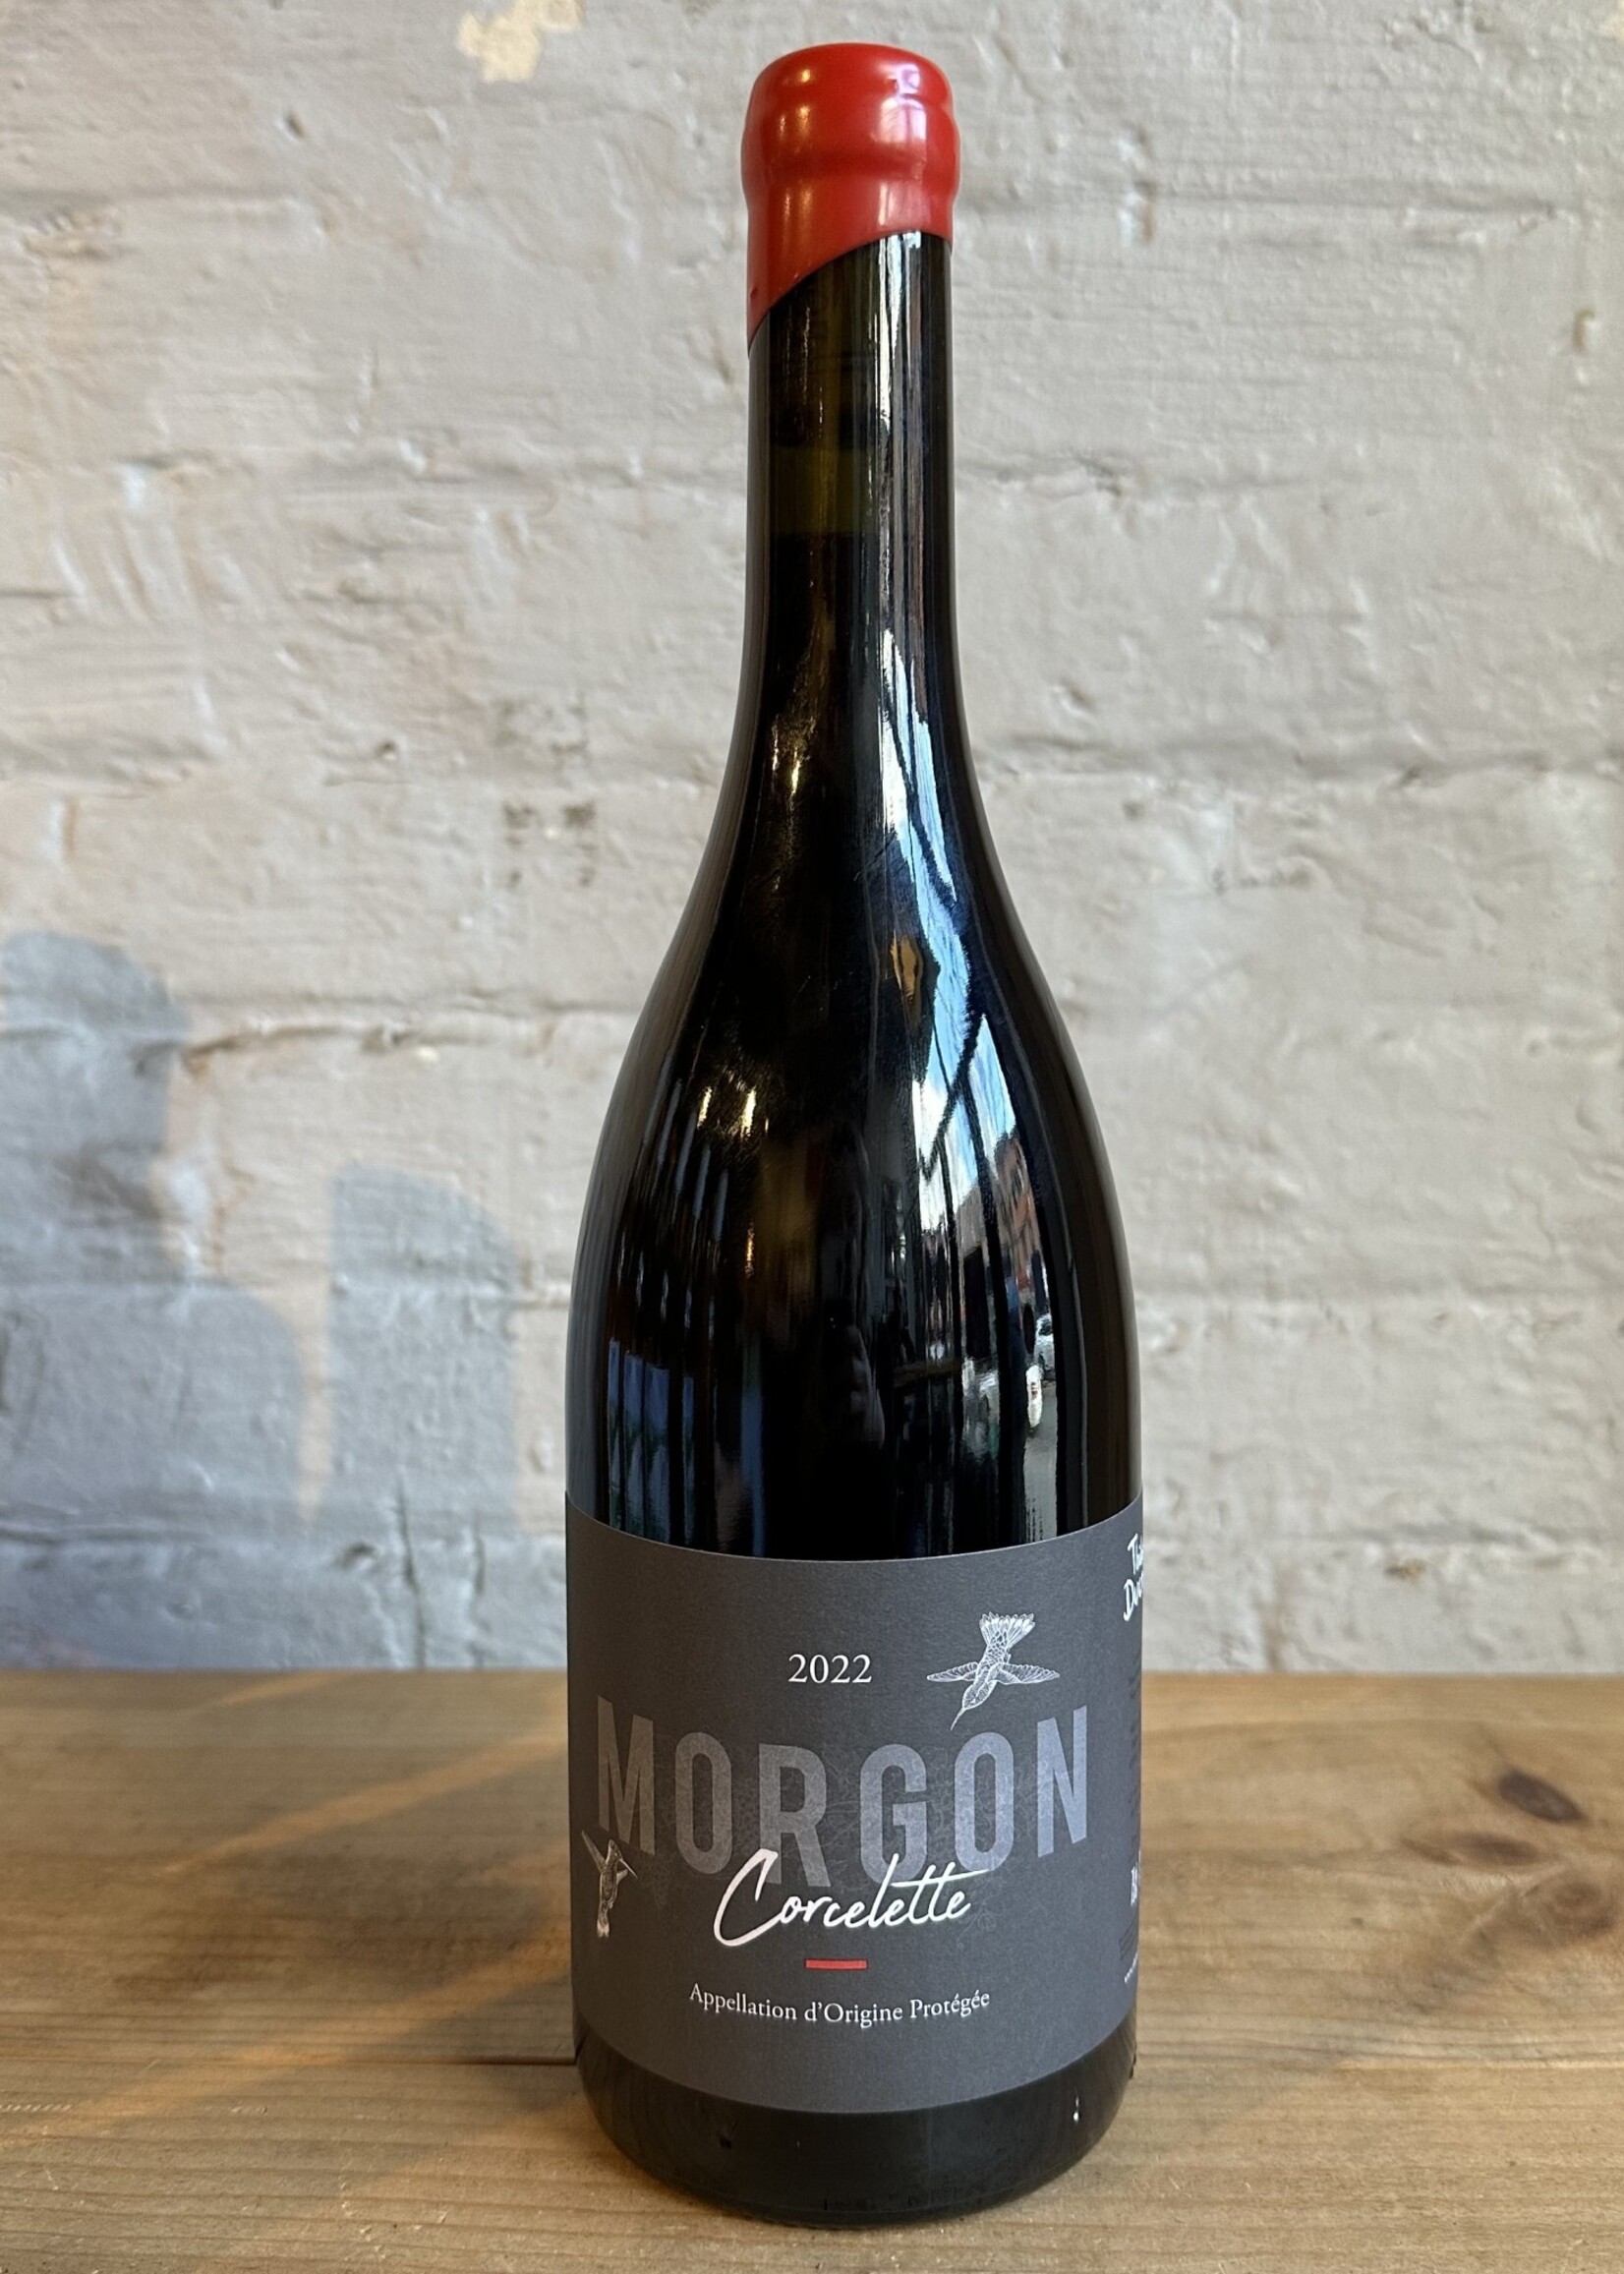 Wine 2022 Thibault Ducroux Morgon Corcelette - Beaujolais, France (750ml)